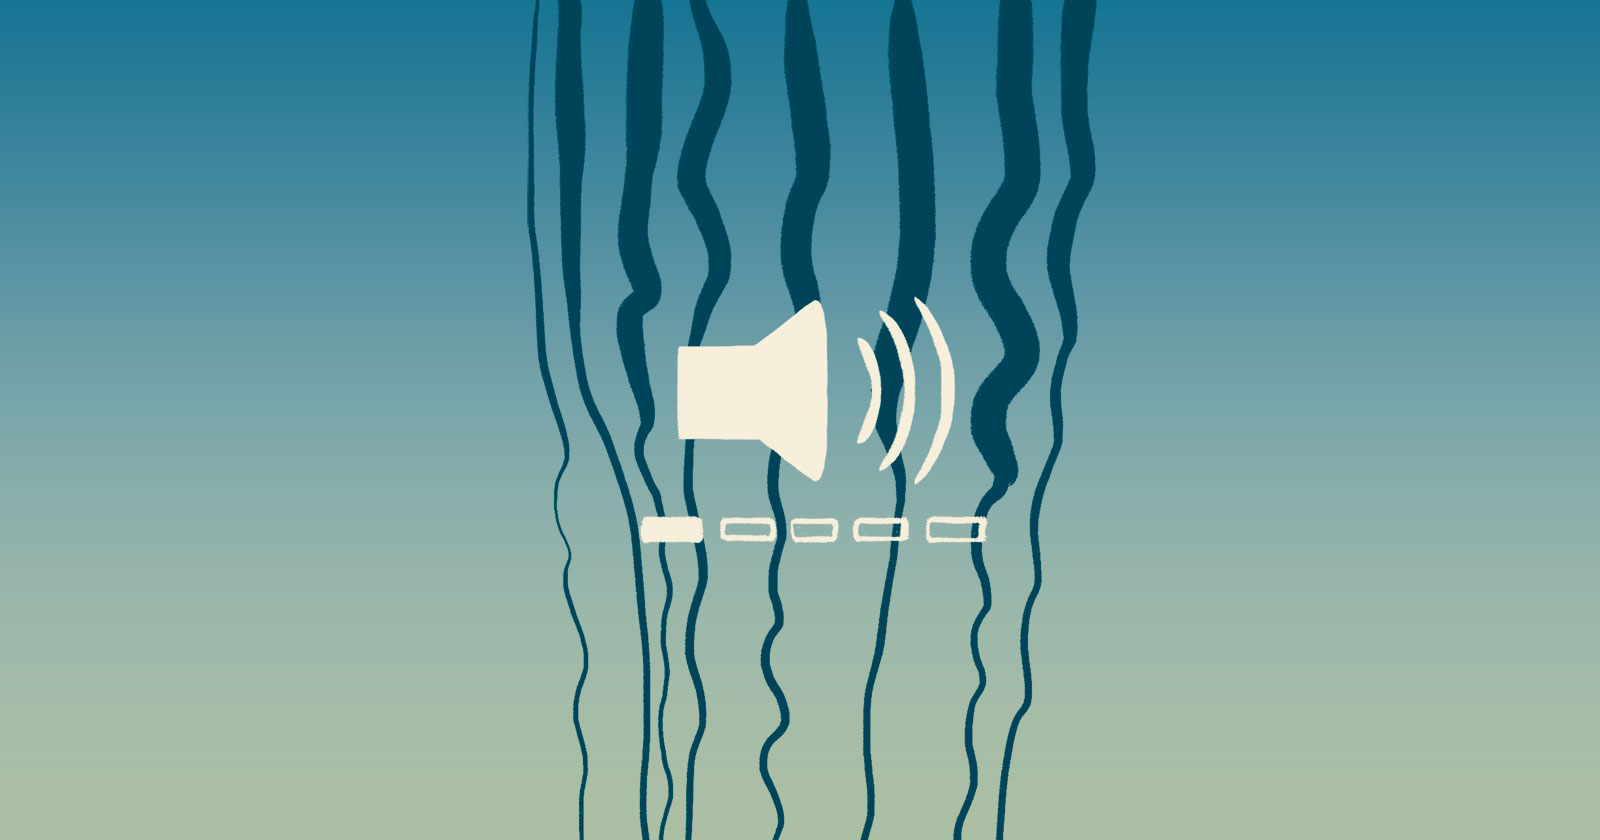 Zeewater Noise Volume